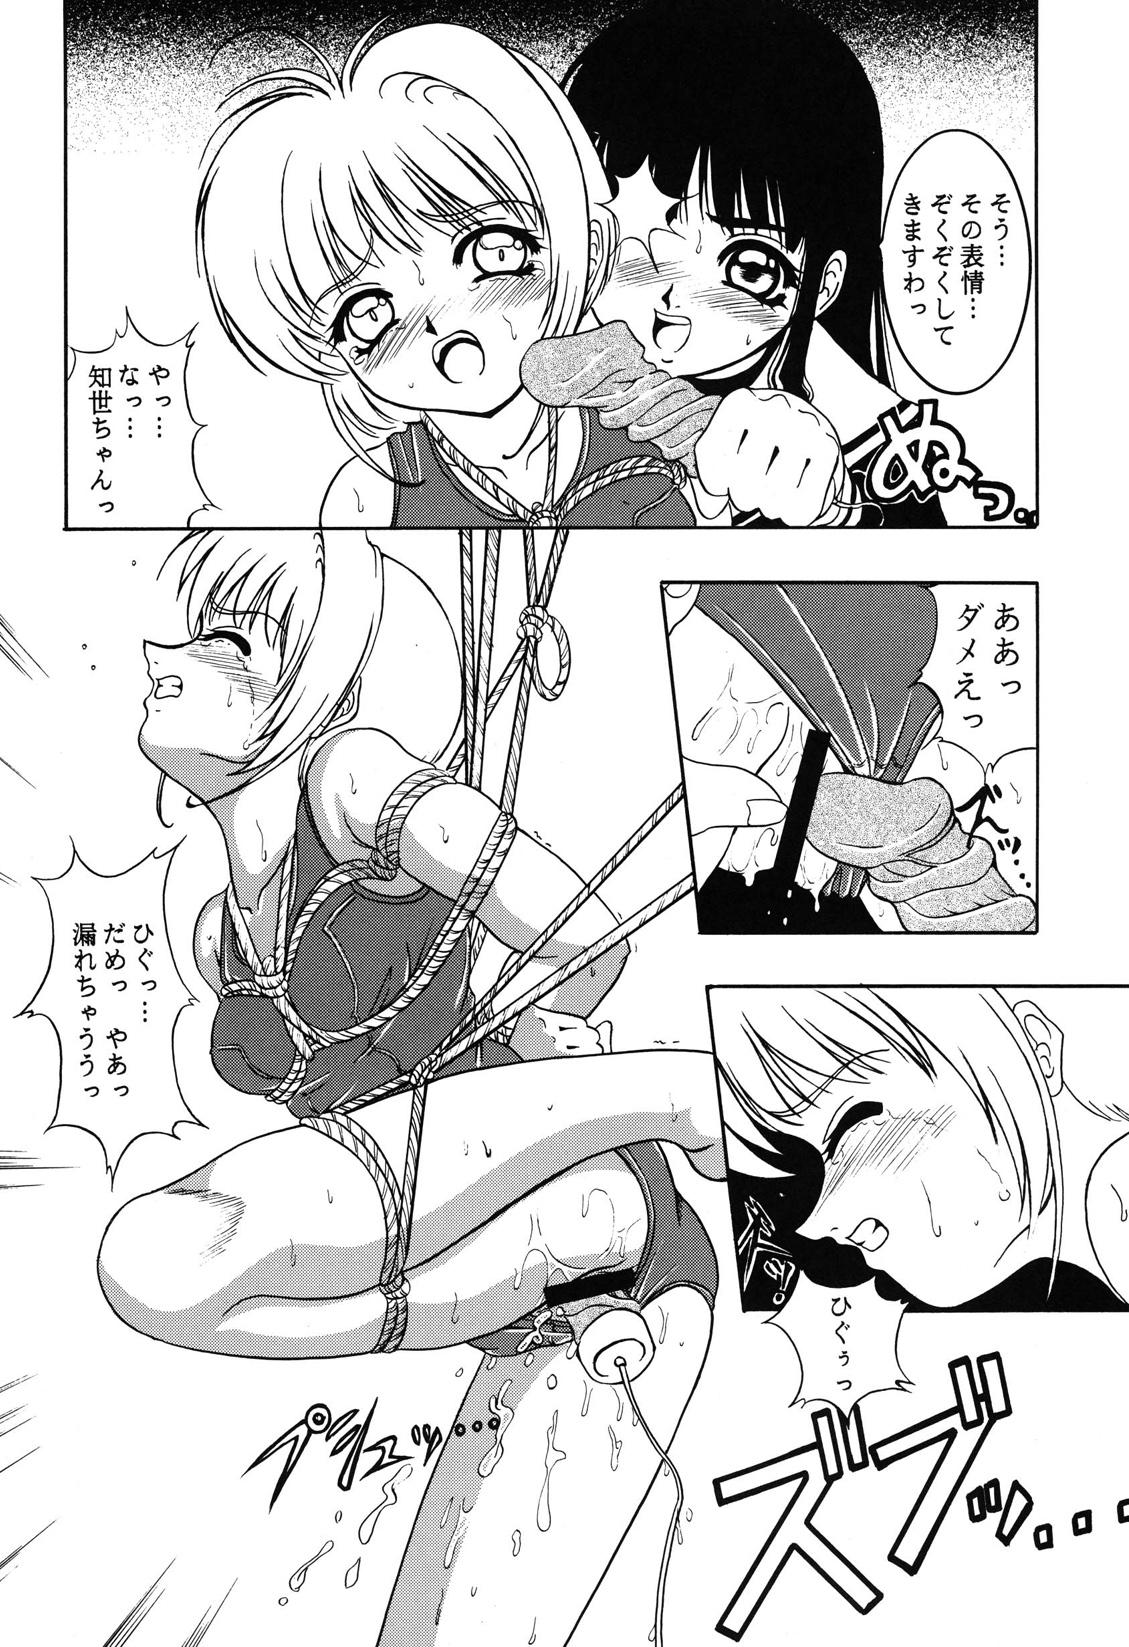 Buttfucking Hana ni Arashi no Rei hemo Aruzo - Cardcaptor sakura Ffm - Page 10